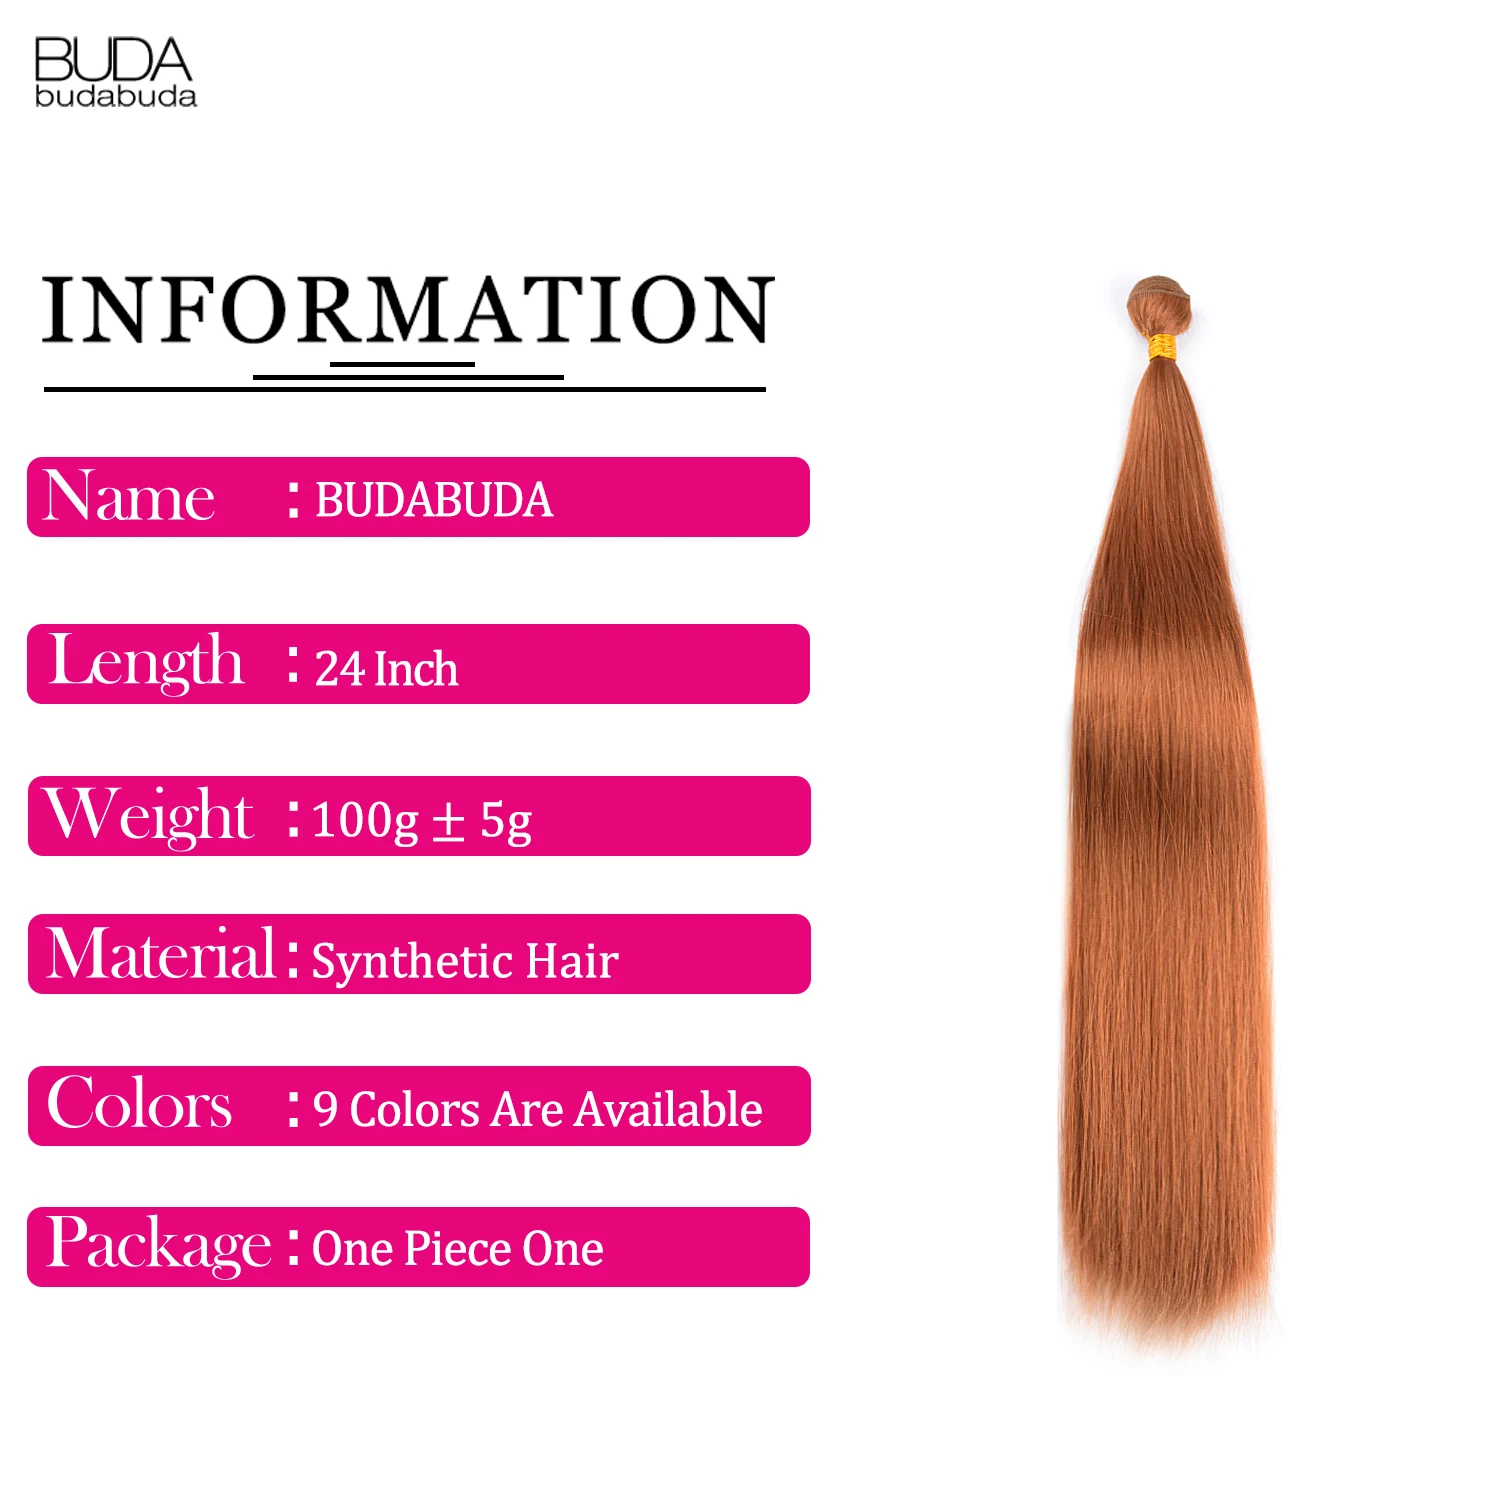 Extensiones de cabello liso de hueso, de 24 pulgadas sintético mechones de pelo largo y liso, pelo de fibra resistente al calor, Cosplay marrón y Rubio